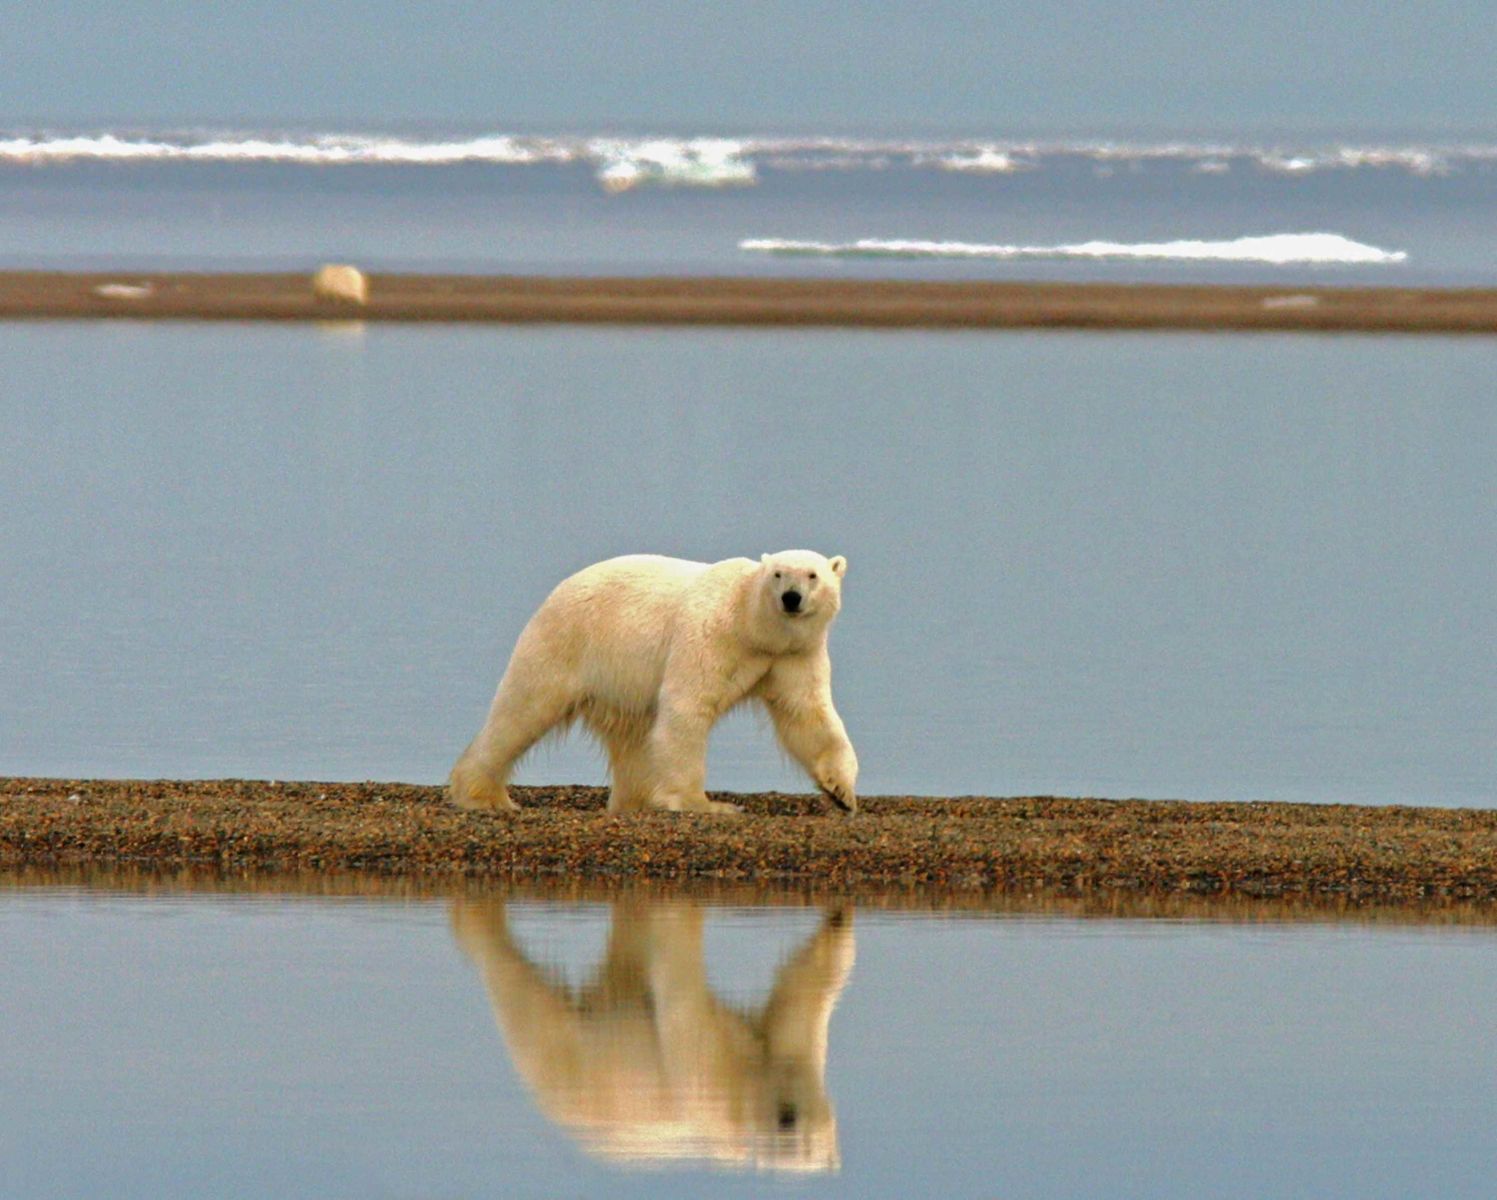 Los osos polares están en peligro debido al cambio climático